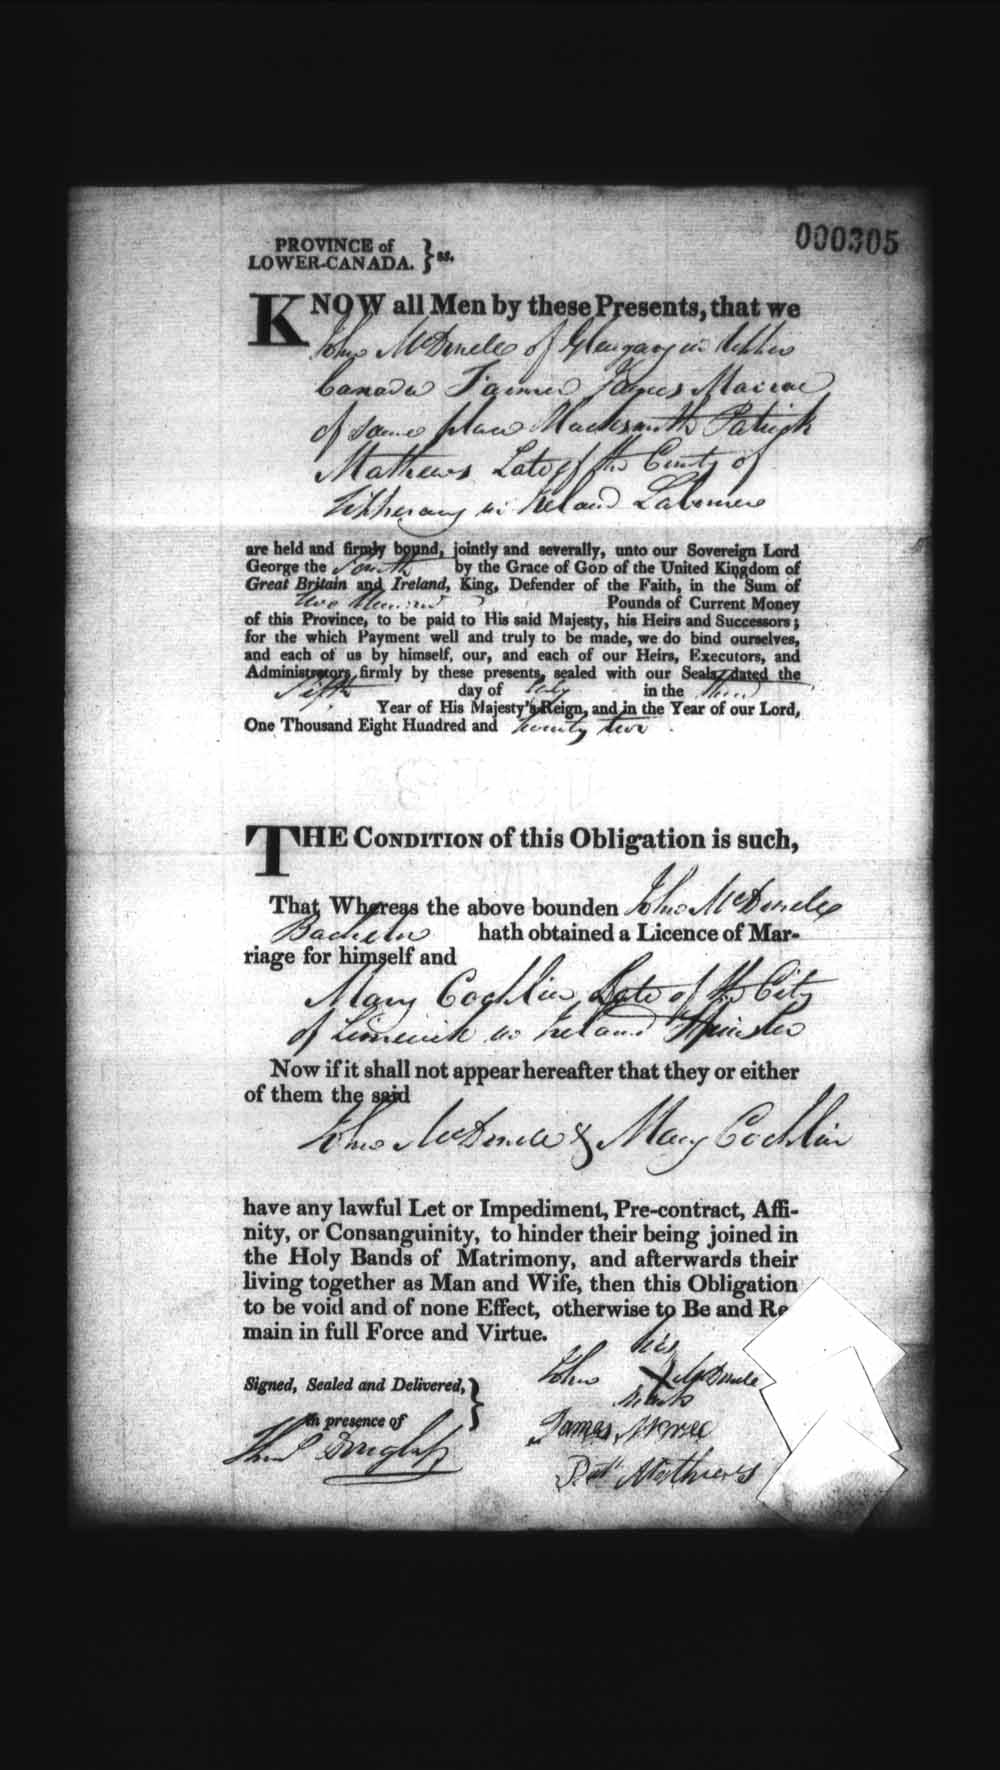 Page numérisé de Cautionnements de mariages pour le Haut-Canada et le Bas-Canada (1779-1865) pour l'image numéro: e008236180